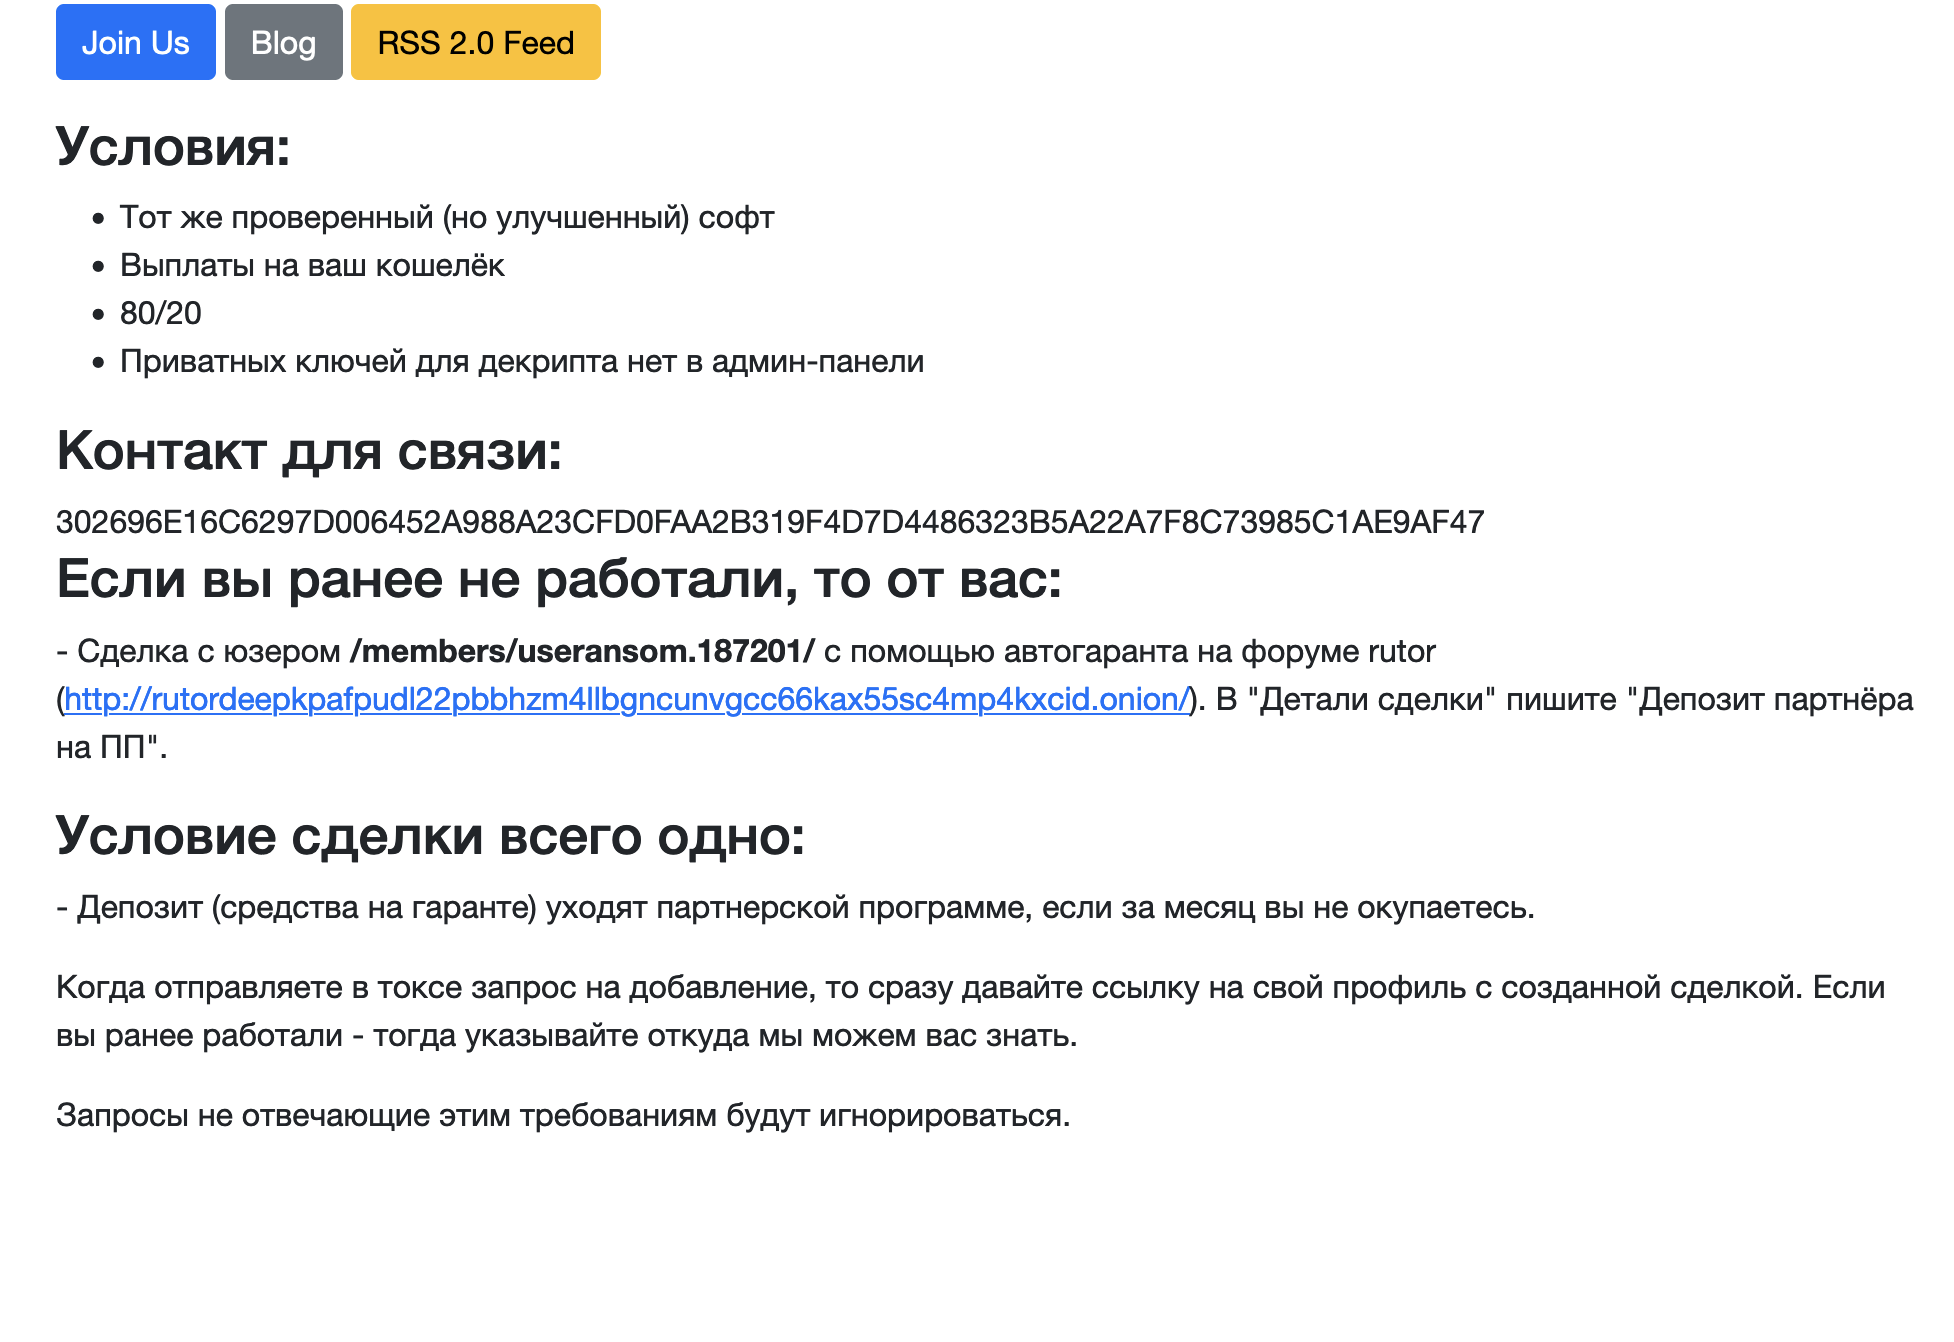 新リークサイトの募集要項セクション参加希望者をRuTORにリダイレクトしていたロシア語の投稿